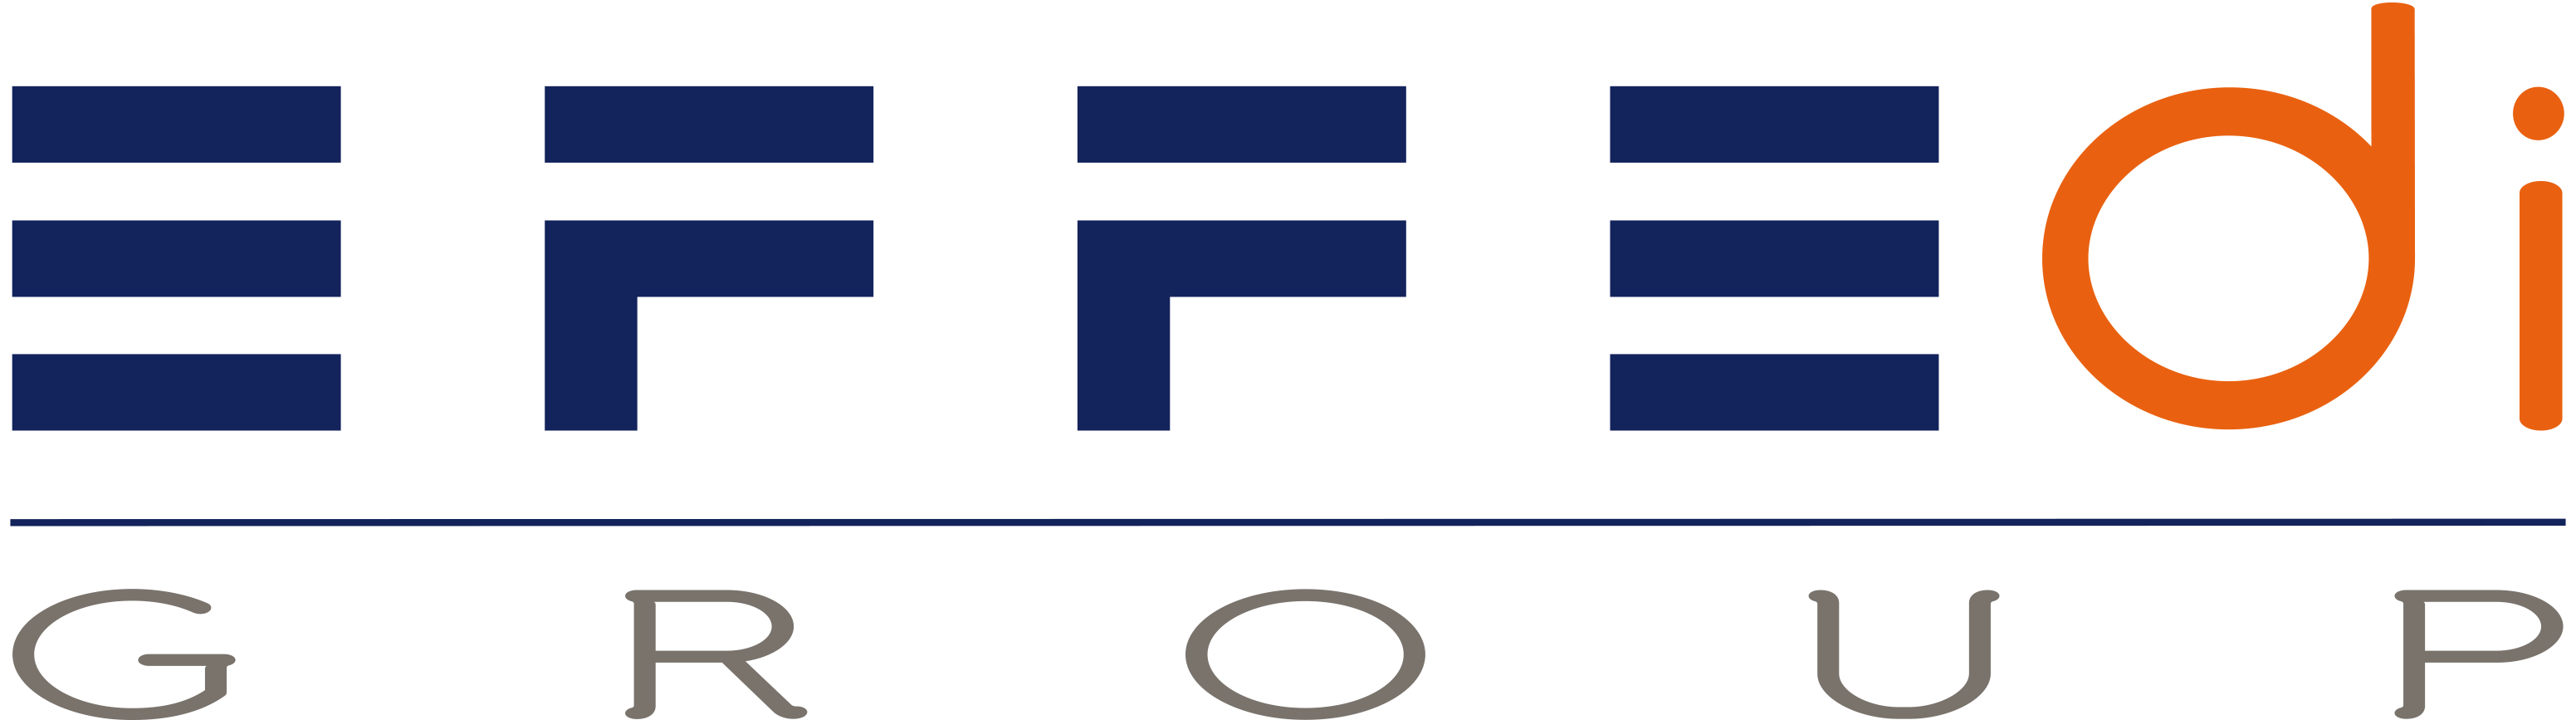 logo_EFFEDI_GROUP.png